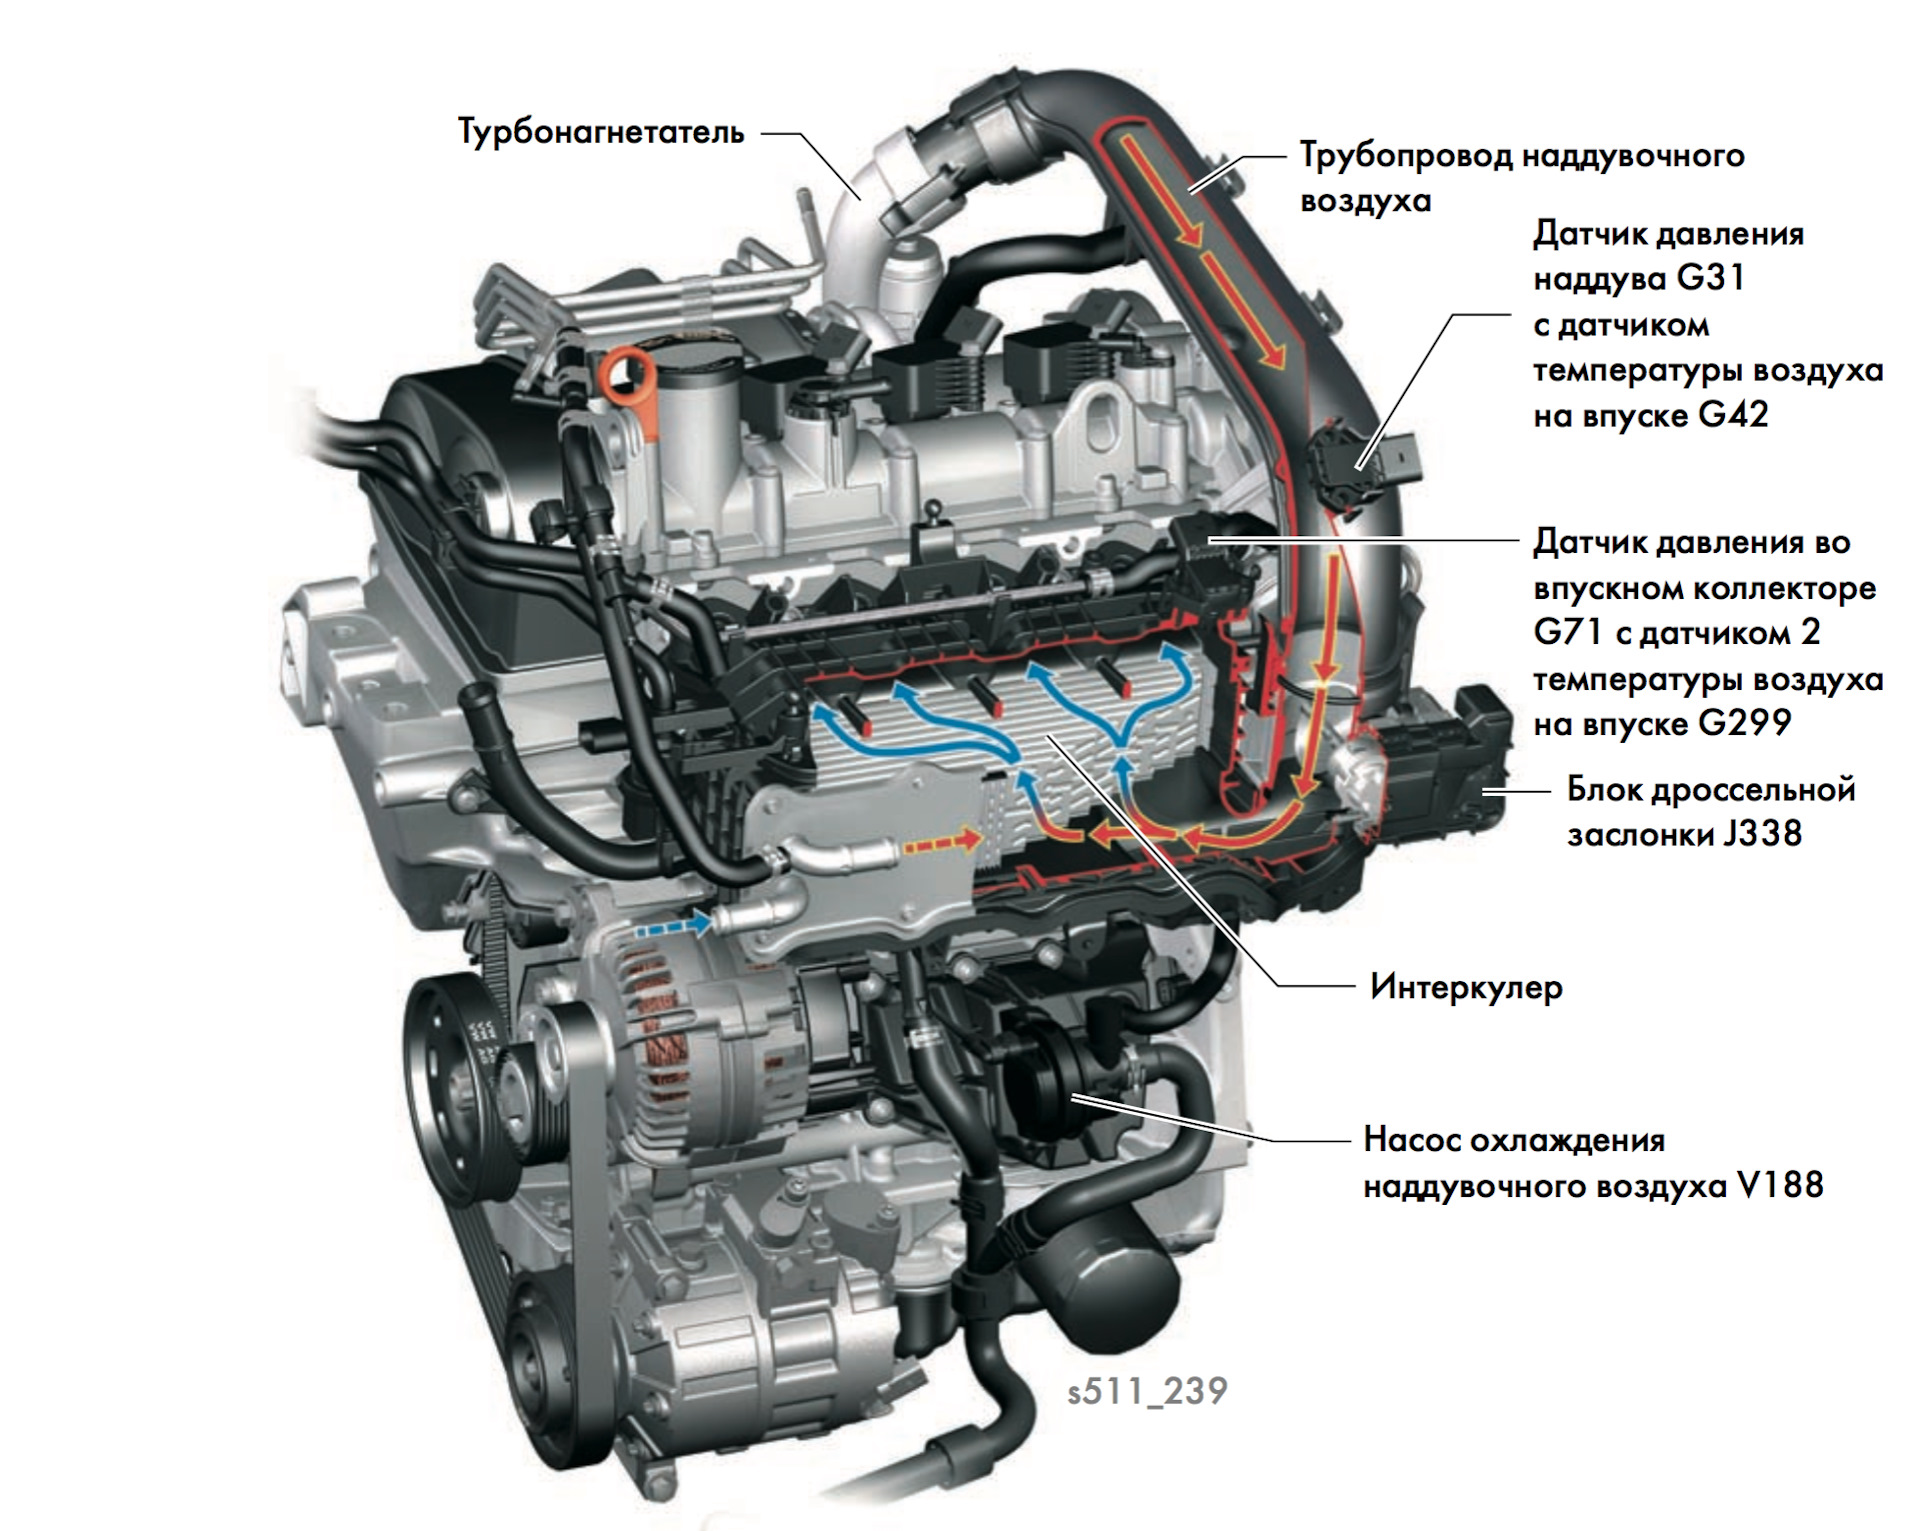 Volkswagen touran 1.2, 1.4, 1.6, 1.8, 1.9, 2.0 масло для двигателя: сколько и какое нужно заливать